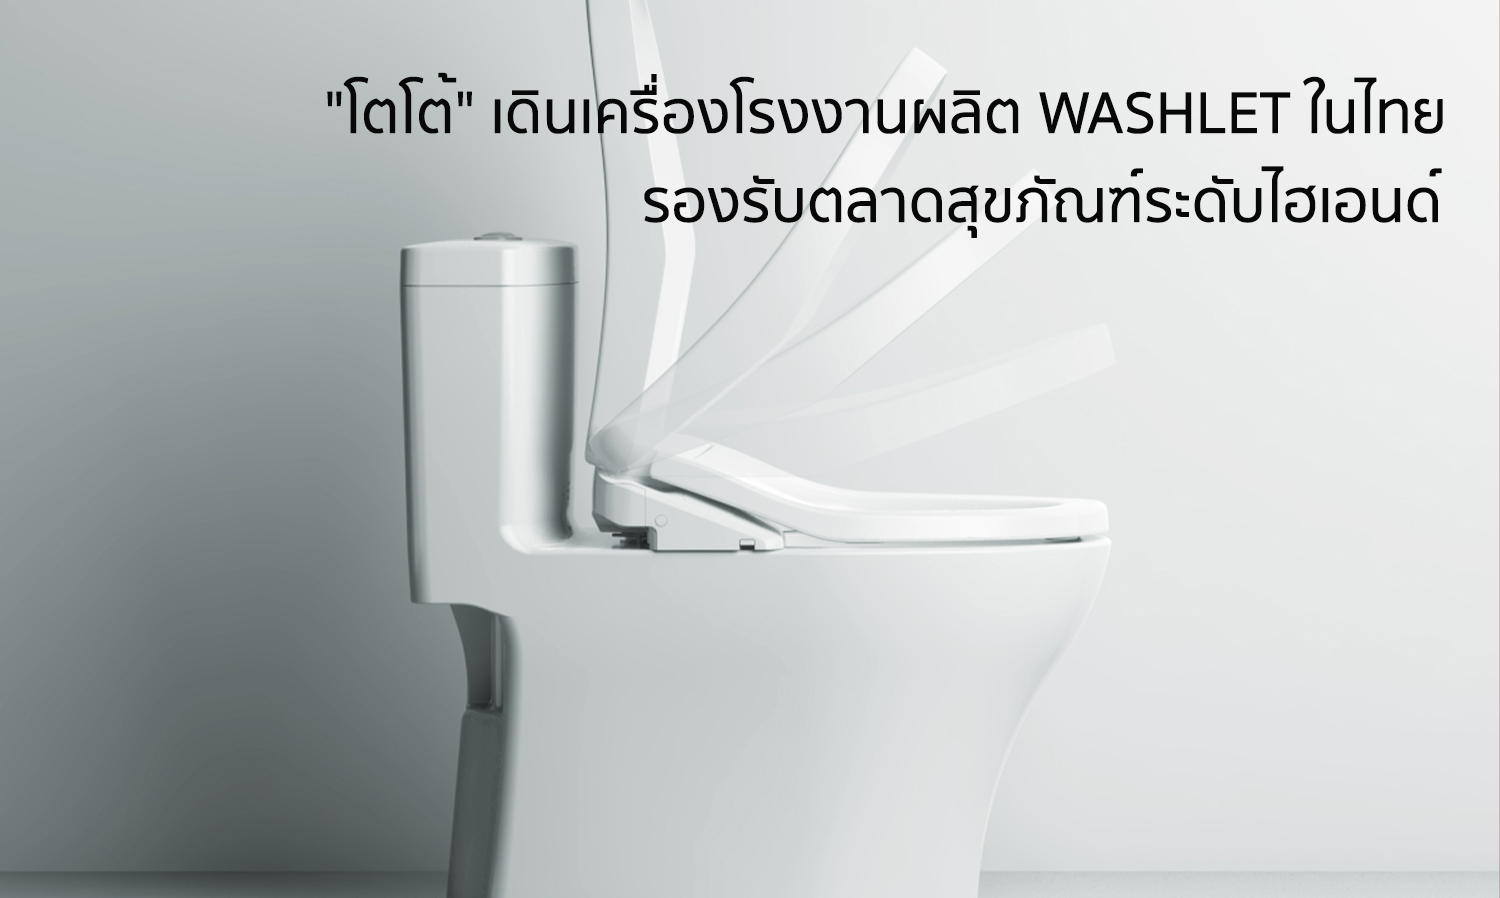 -โตโต้-เดินเครื่องโรงงานผลิต-washlet-ในไทย-รองรับตลาดสุขภัณฑ์ระดับไฮเอนด์